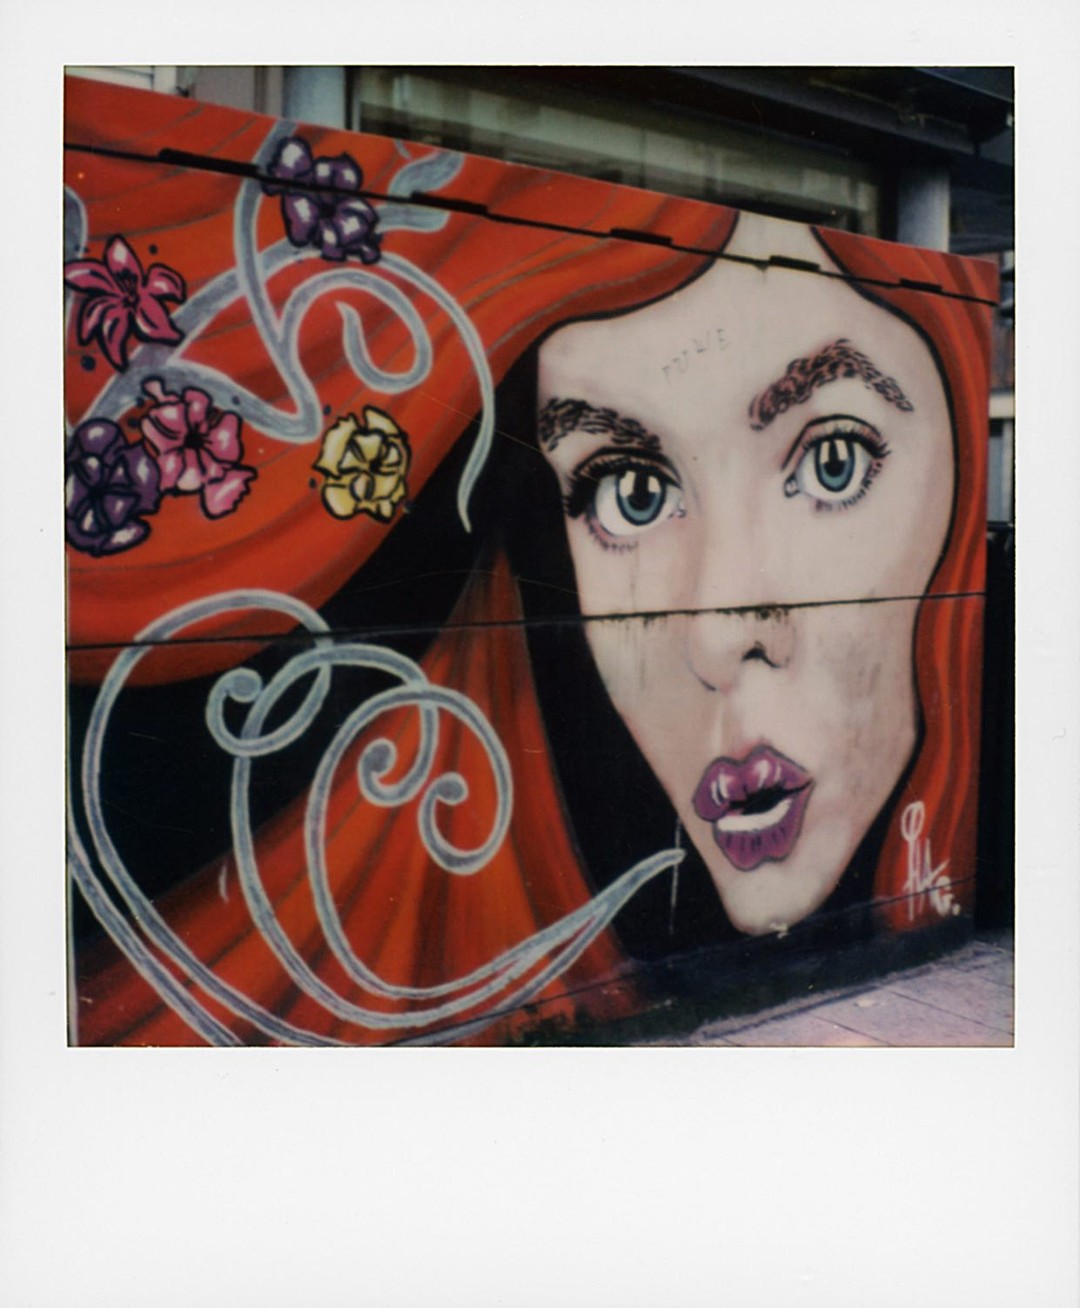 Streetart Boulogne-sur-Mer (artiste?)...
🔻
🔻
#streetart #graffiti #boulognesurmer #mypolaroidnow #polaroid #instantmagazine #polaroidoriginals @polaroid #polaroidoriginals_hk #polaroidoriginals_jp #impossibleproject #sx70 #color600 #instantphoto #analogphotography #instantpic #squarepic #polazine #polaroidoftheday #squaremag #thepolavoid #_instnt #instantfilmsociety #polaroidcommunity🎞 #polazine #polaroid_asia